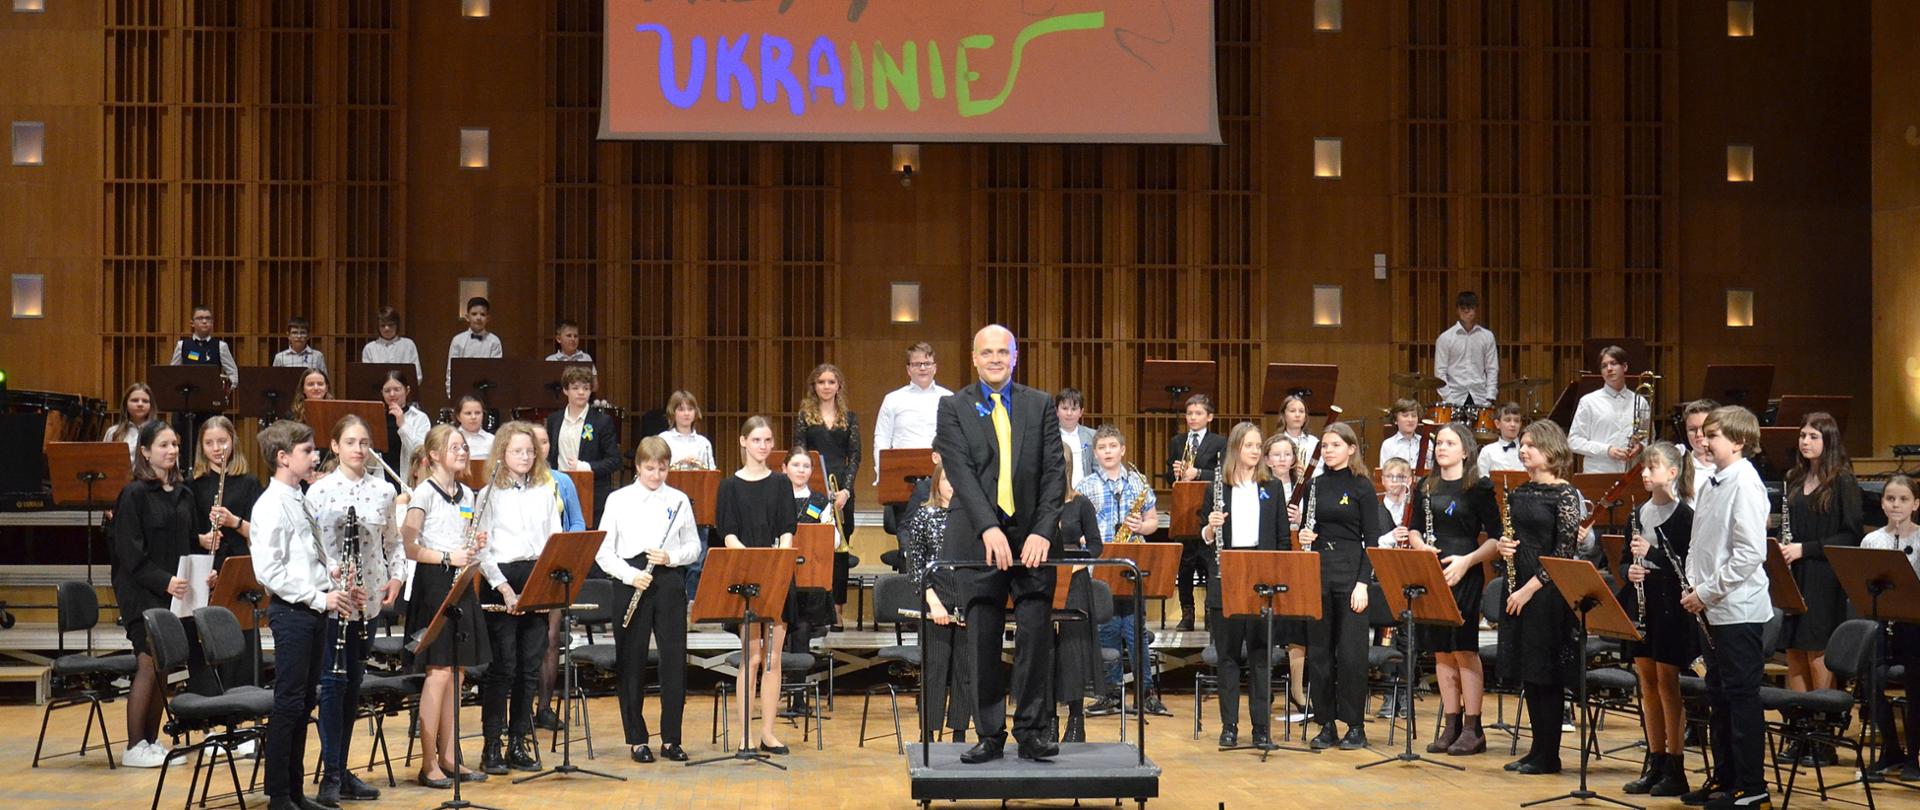 Kolorowe zdjęcie przedstawiające orkiestrę dętą. Na środku sceny, na podeście stoi dyrygent orkiestry a obok niego i za nim stoją uczniowie trzymający swoje instrumenty. Wszyscy wykonawcy ubrani są w czarno- białe stroje. Na scenie znajdują się również pulpity do nut. Ponadto pod sufitem wisi ekran na którym wyświetlony jest napis muzycy Ukrainie.